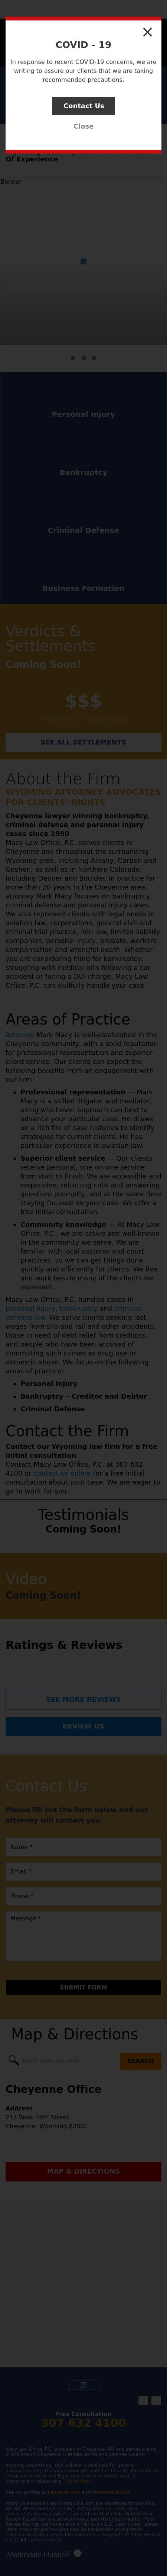 Mark E Macy - Cheyenne WY Lawyers